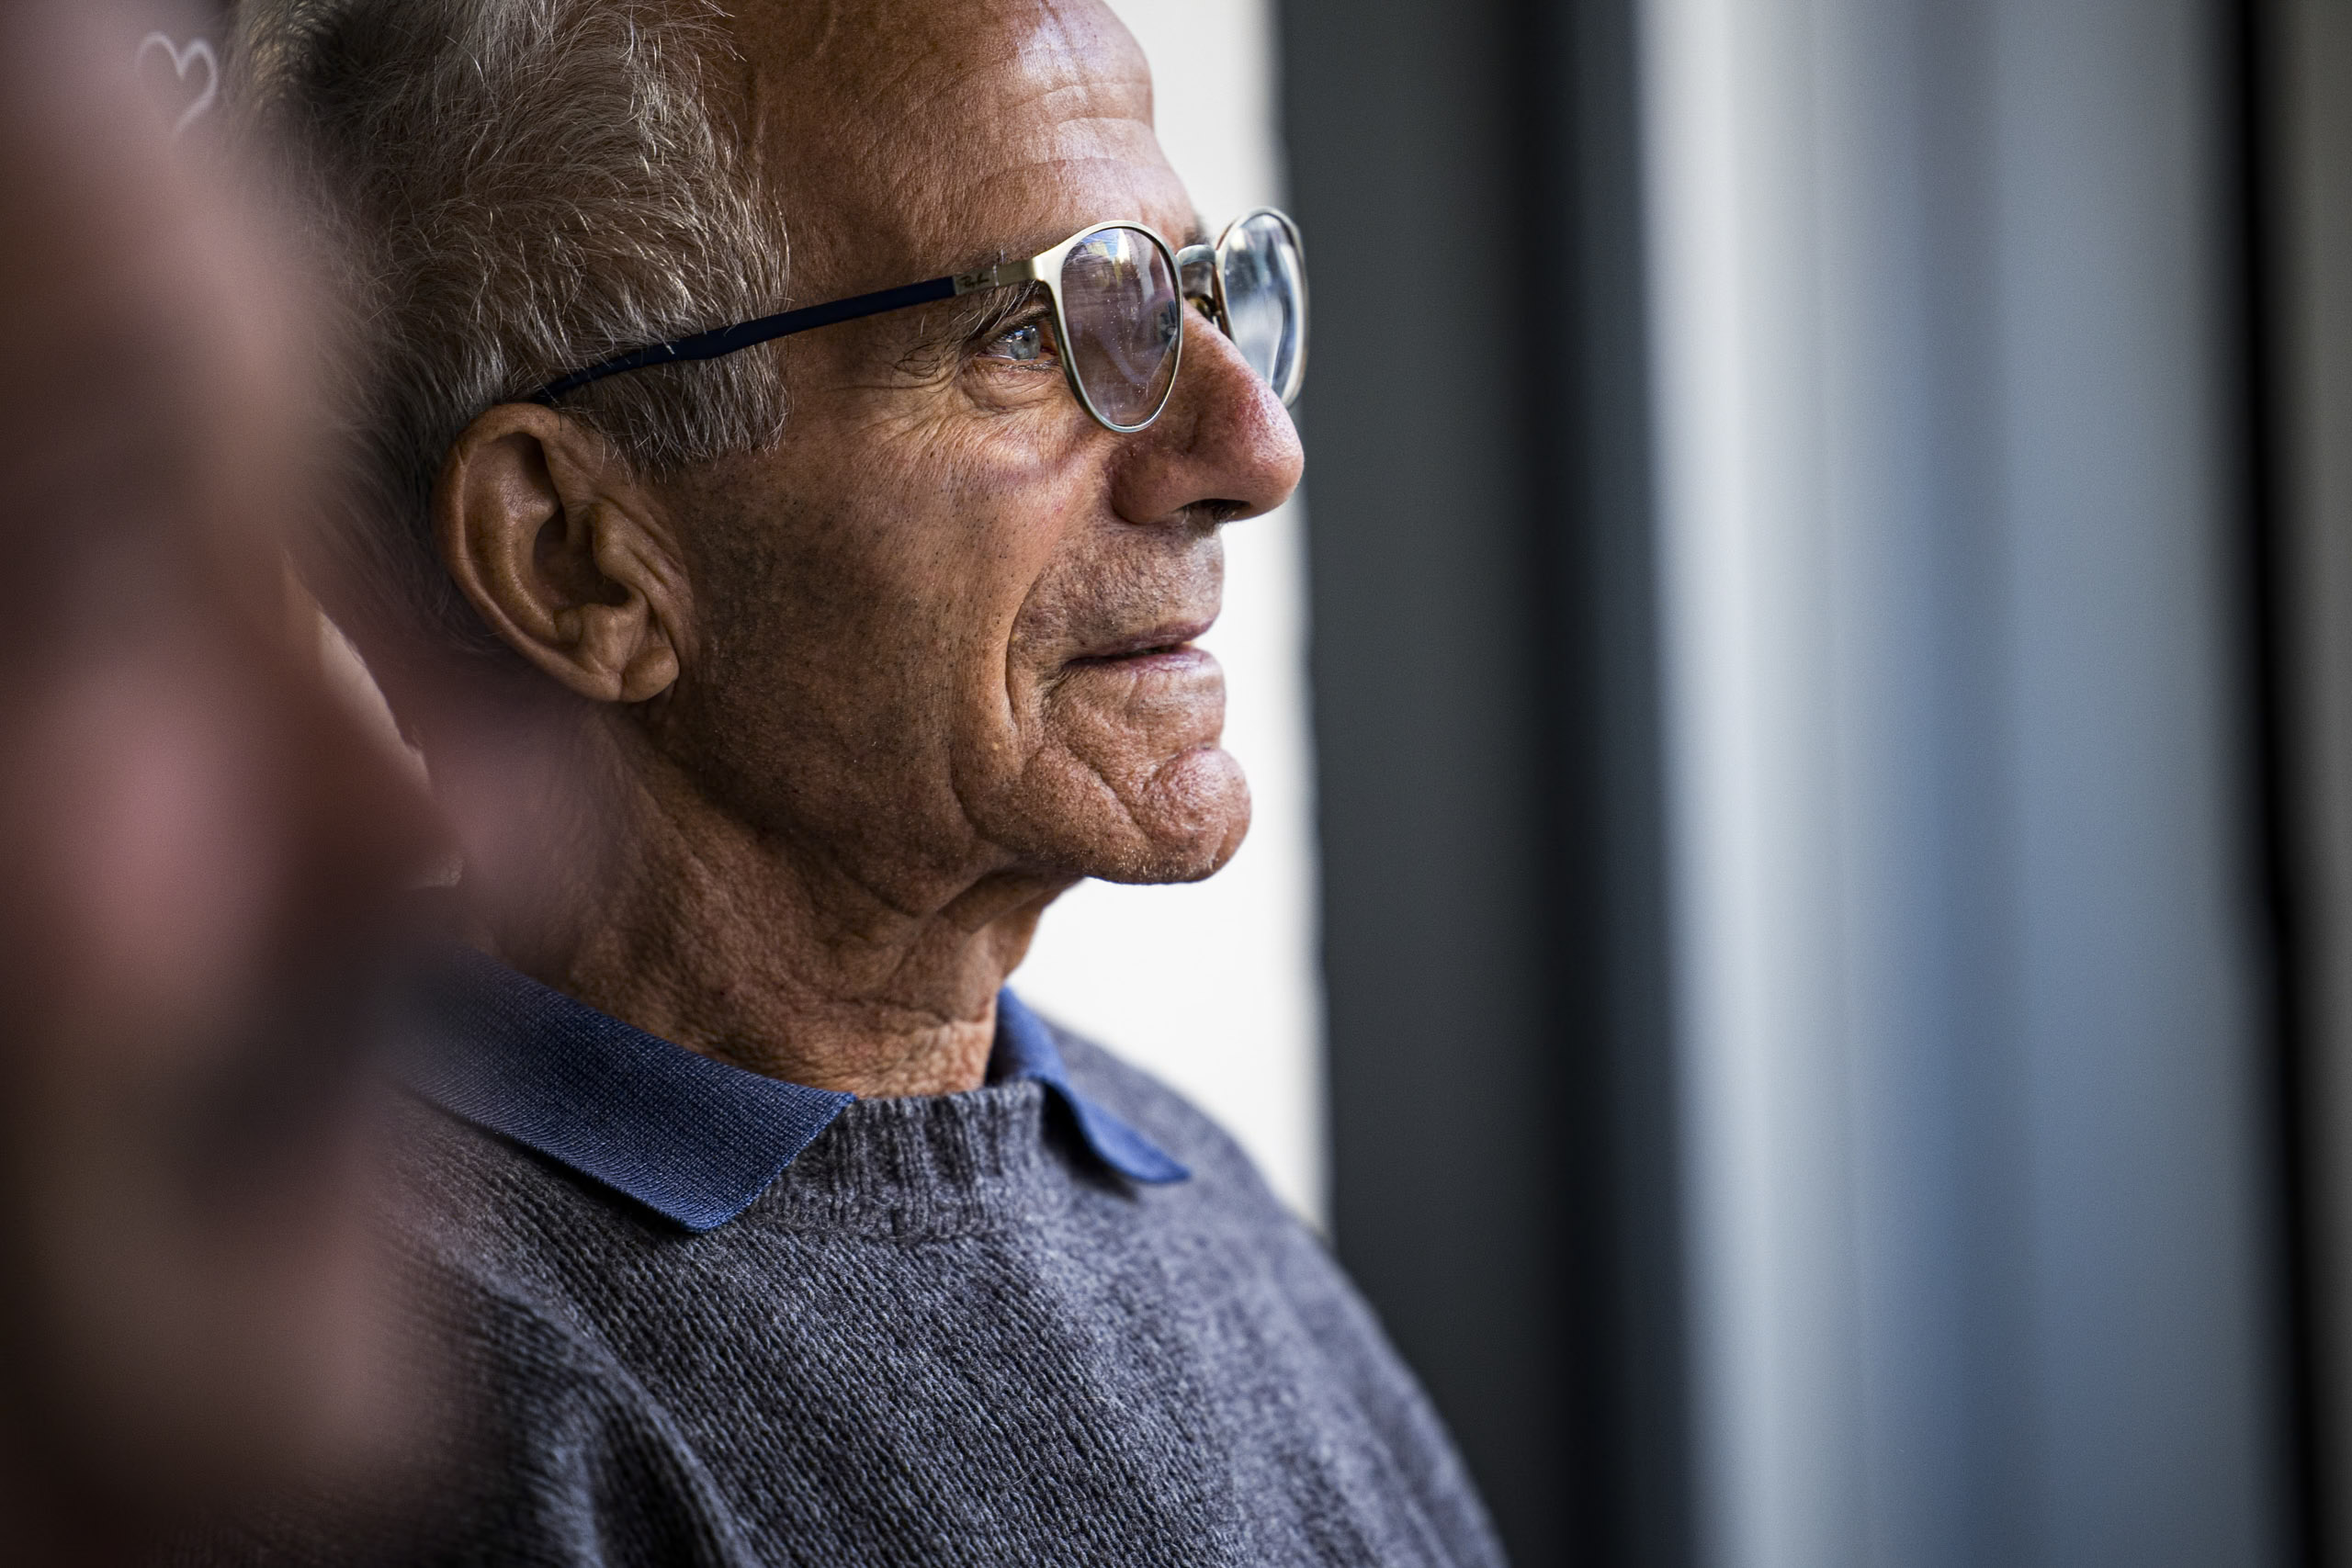 Profil eines älteren Mannes mit Brille, der in Gedanken versunken aus dem Fenster blickt. Er trägt einen Pullover und hat einen nachdenklichen Gesichtsausdruck, der ein Gefühl der Kontemplation oder Erinnerung vermittelt. © Fotografie Tomas Rodriguez